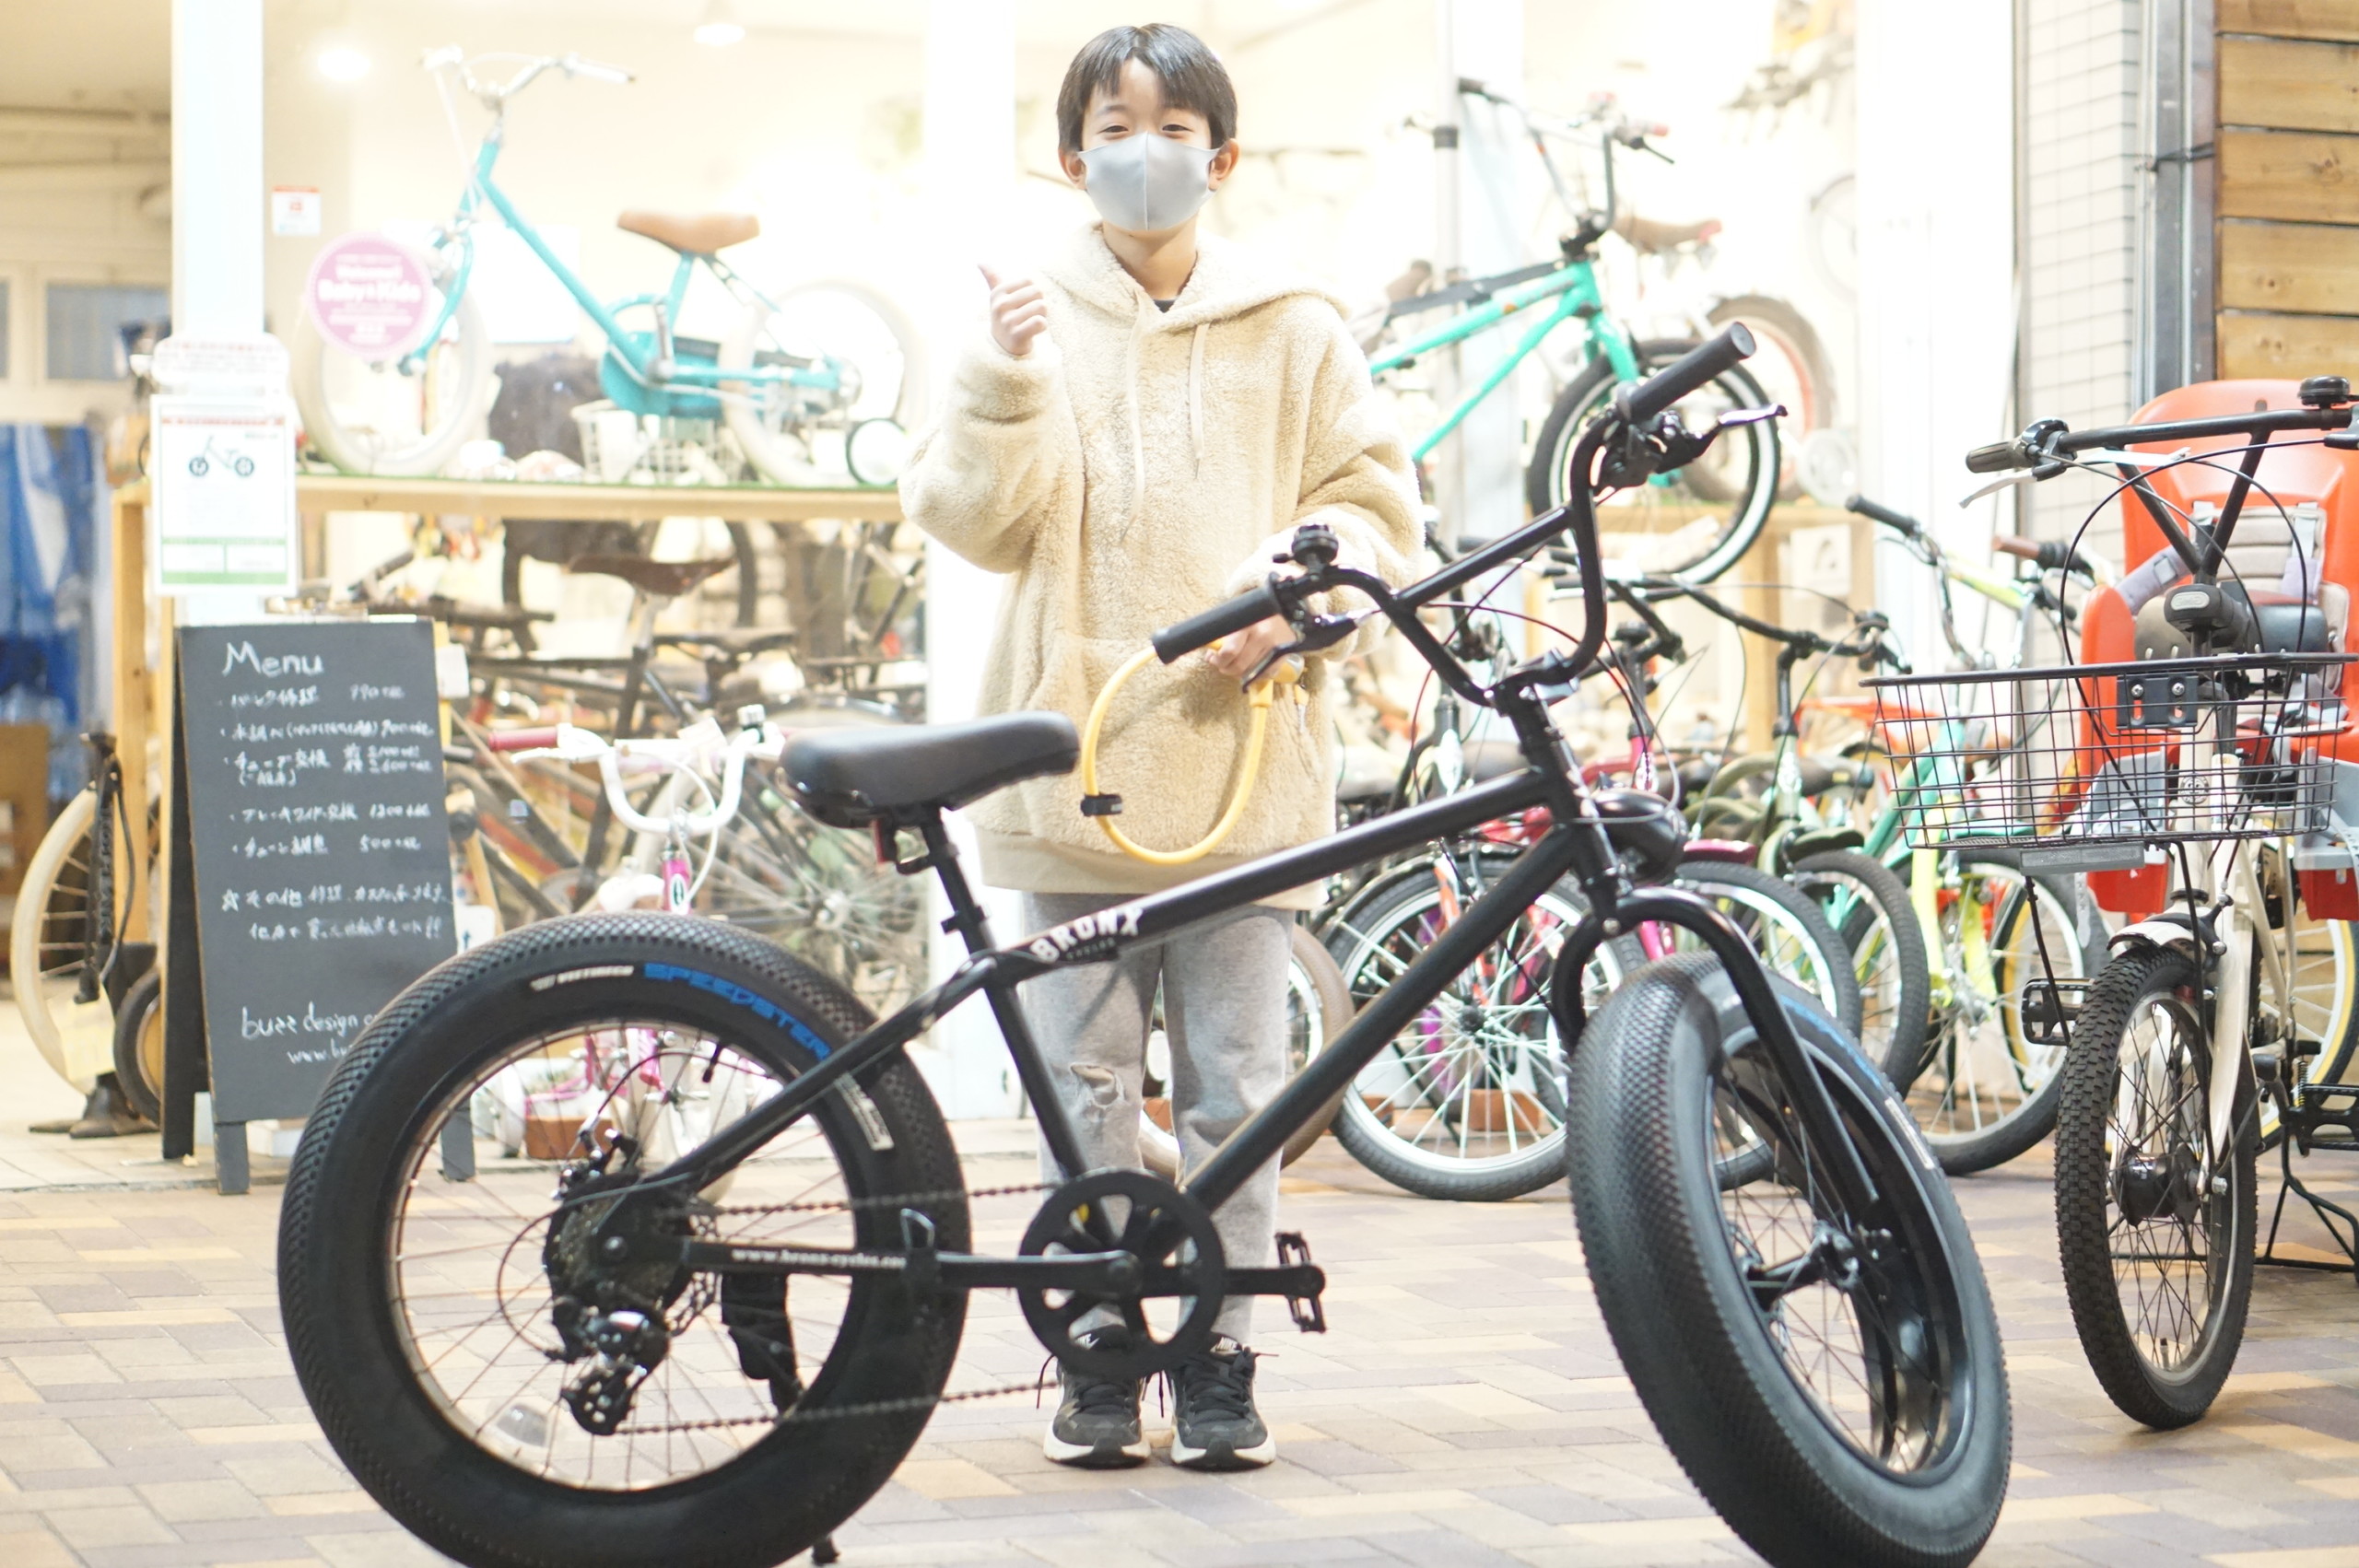 幅広い世代で楽しめるファットバイク 親子で乗れるおしゃれでかっこいい自転車をお求めなら愛知県名古屋市北区のバズデザインサイクル